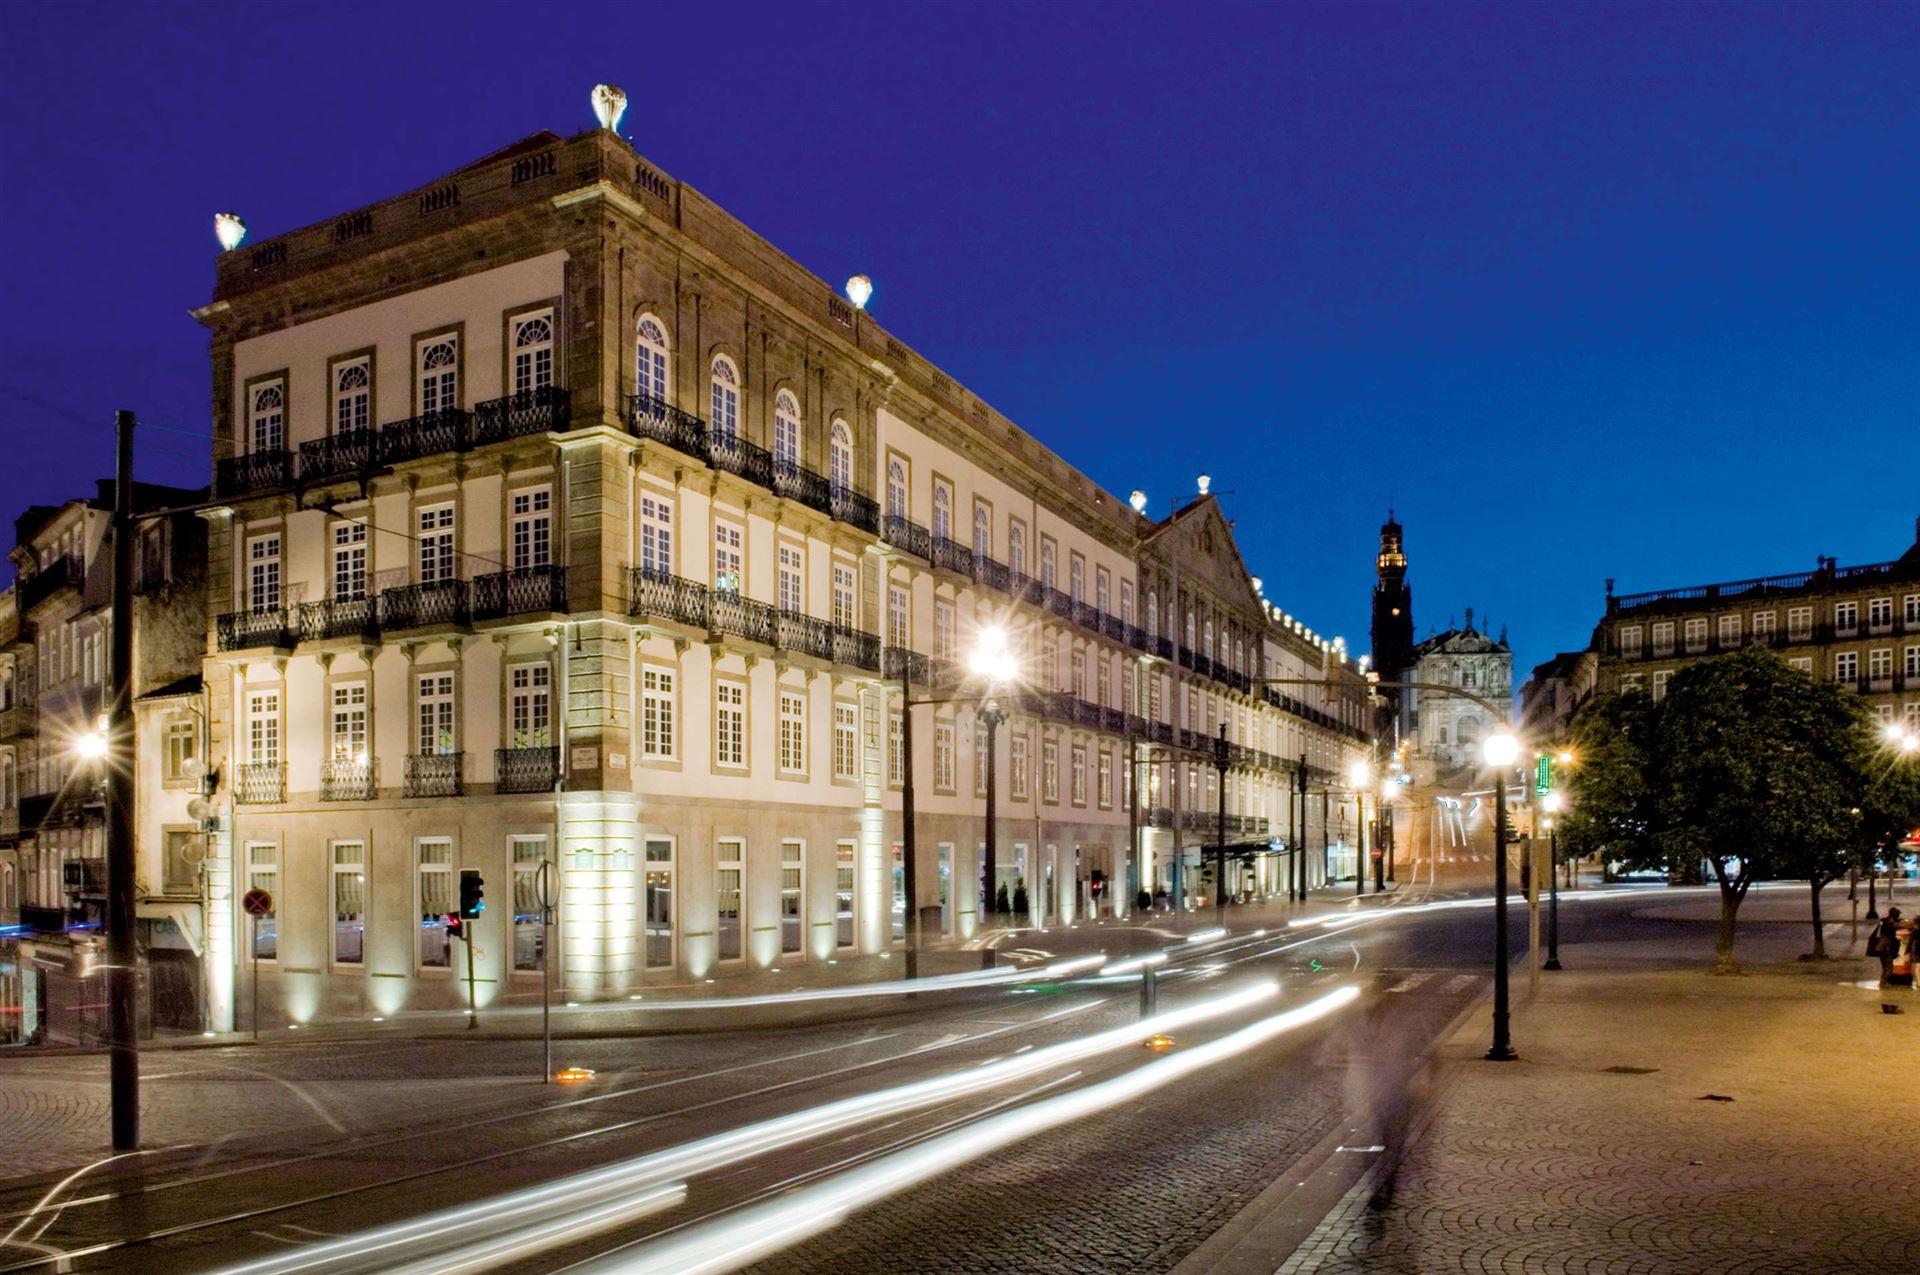 InterContinental Porto - Palacio das Cardosas luxe hotel deals